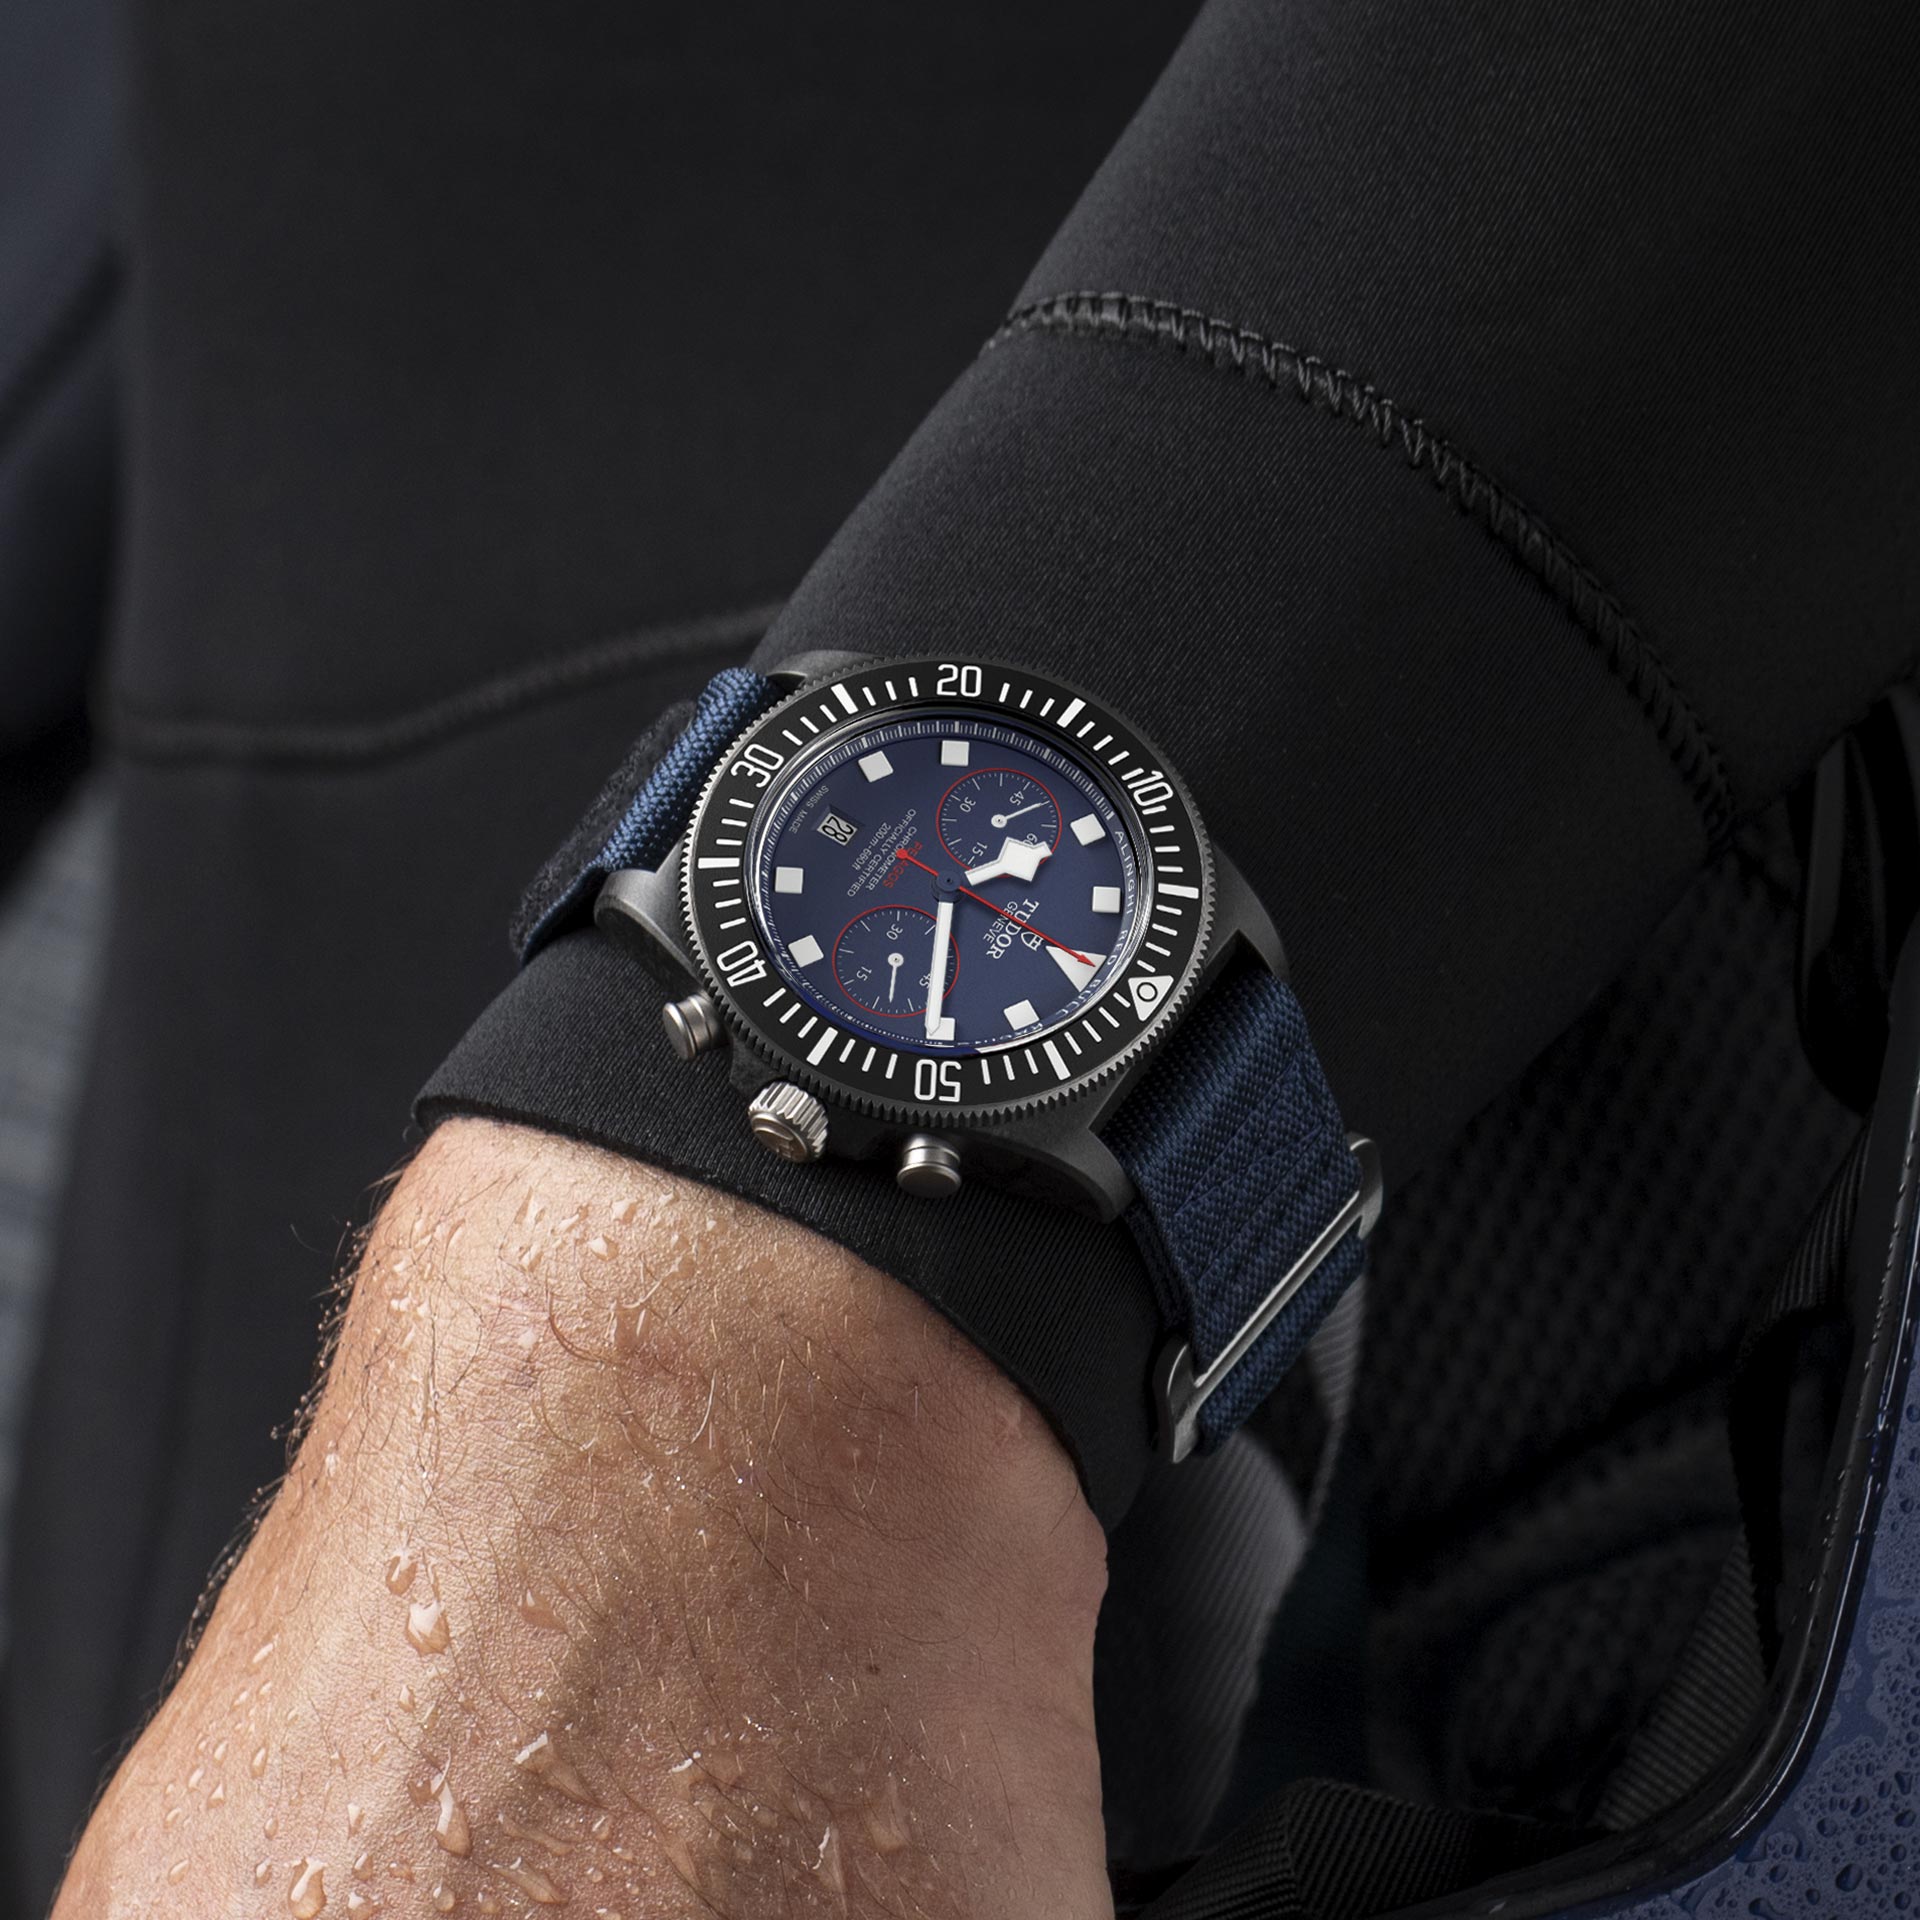 Tudor Pelagos FXD Chrono, Carbon composite, 43mm, Ref# M25807KN-0001, Watch on hand